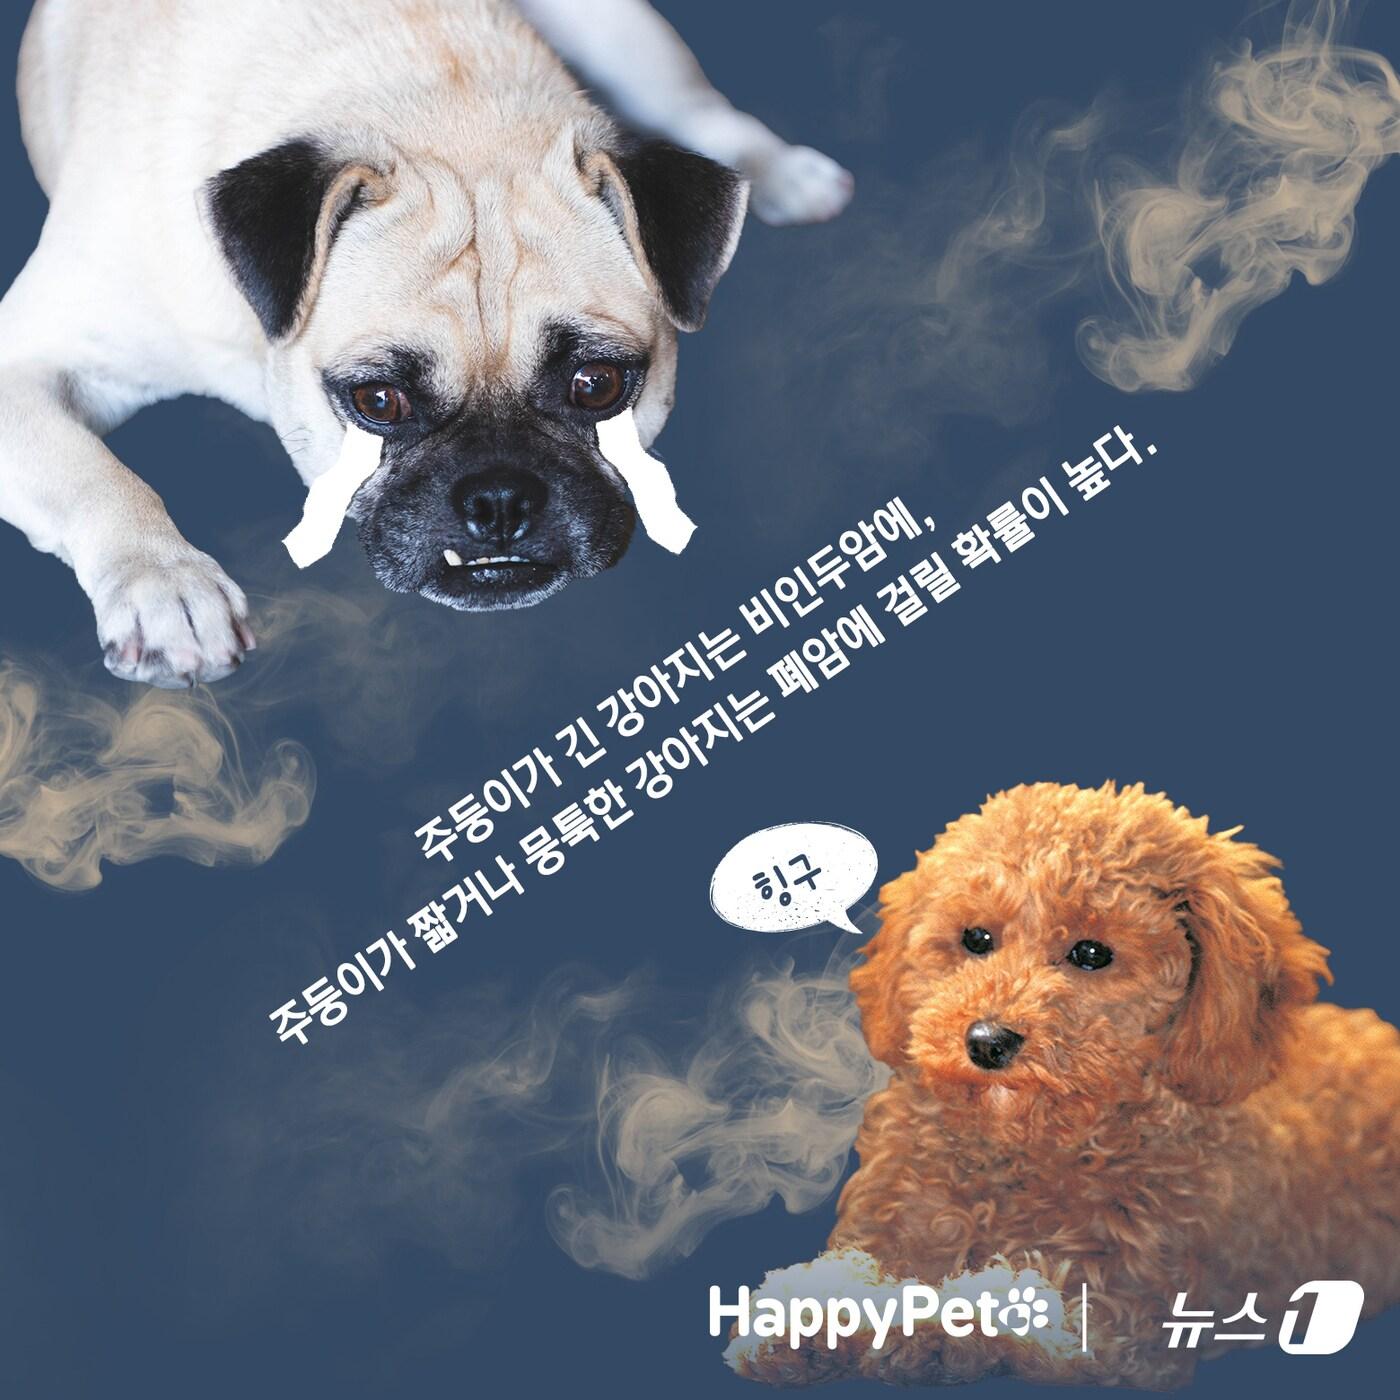 반려동물에게도 위험한 간접흡연 펫카드 ⓒ 뉴스1